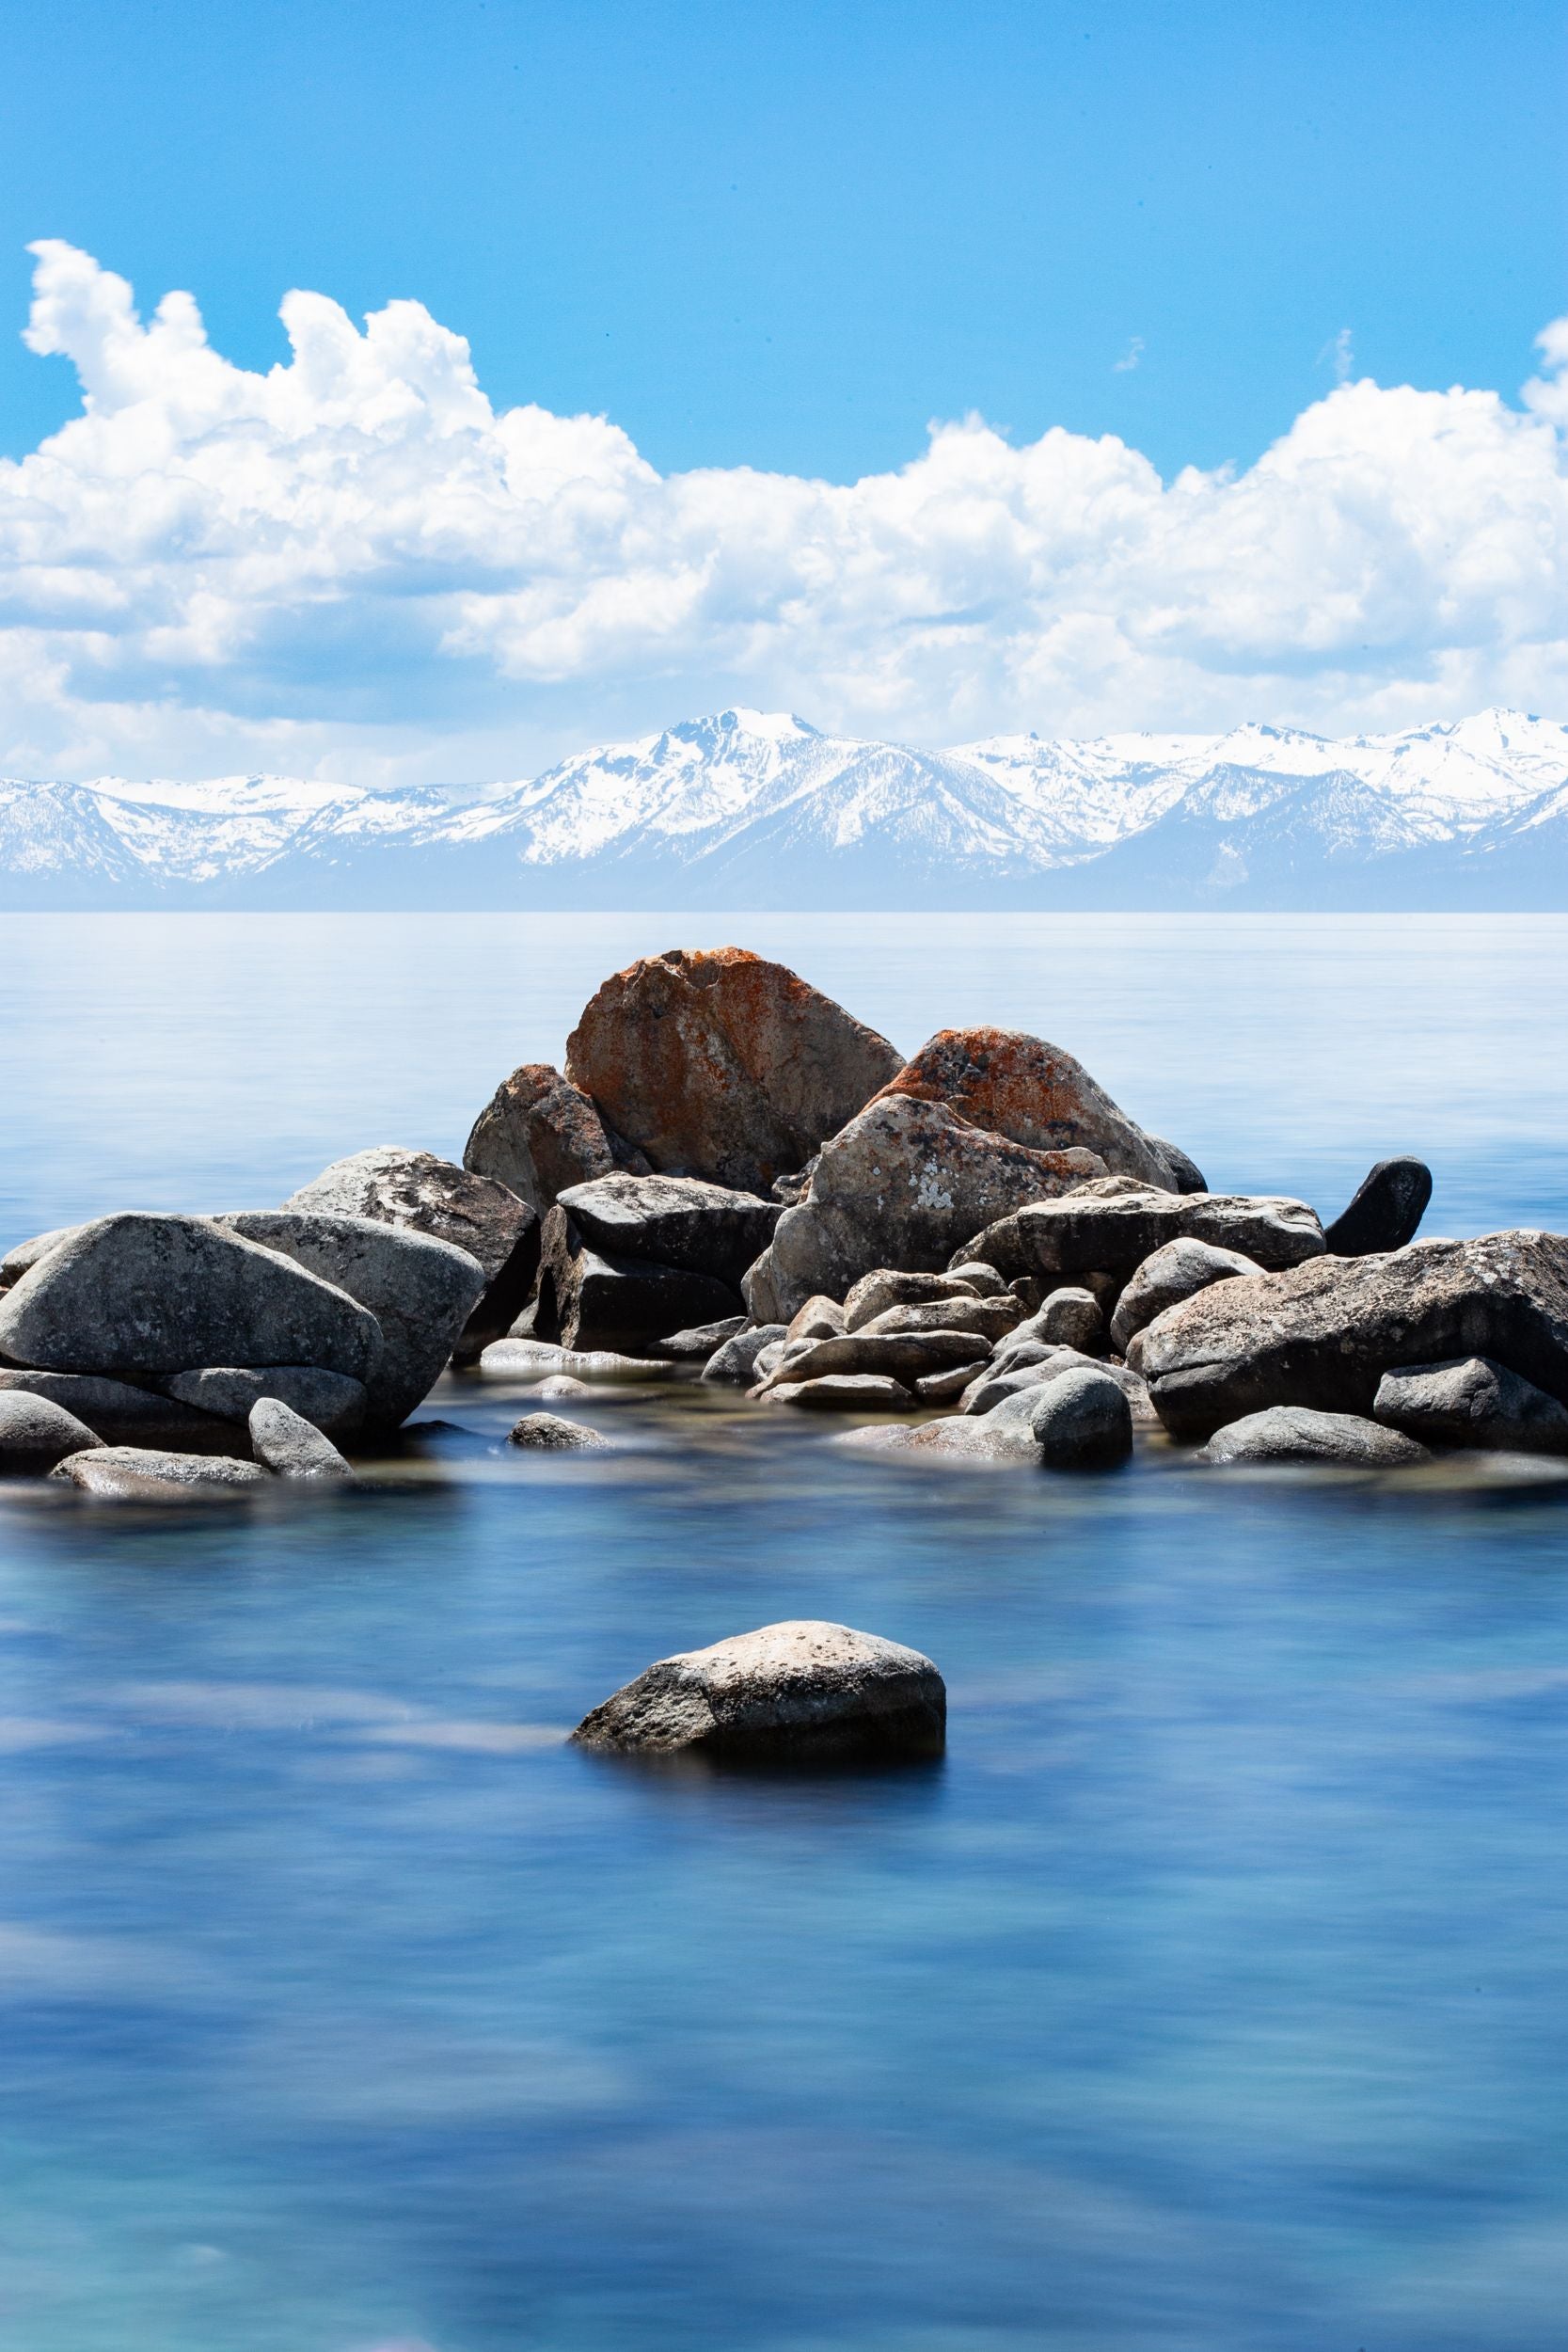 Granite rocks sit in the blue waters of Lake Tahoe as snow capped peaks line the horizon.